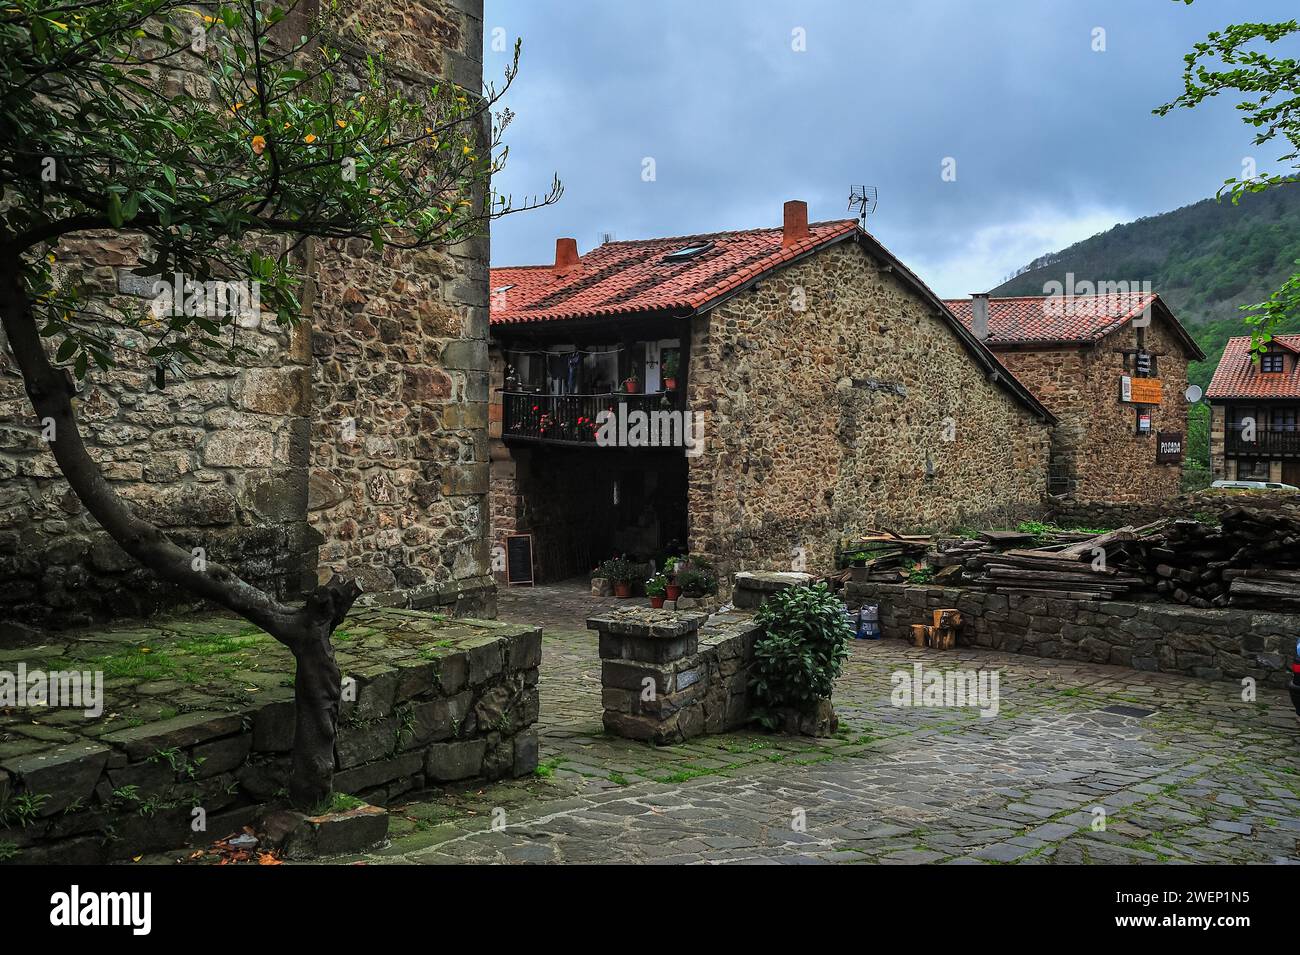 Un chemin serein bordé de pavés flanqué de maisons traditionnelles en pierre et de verdure luxuriante dans un village européen pittoresque Banque D'Images